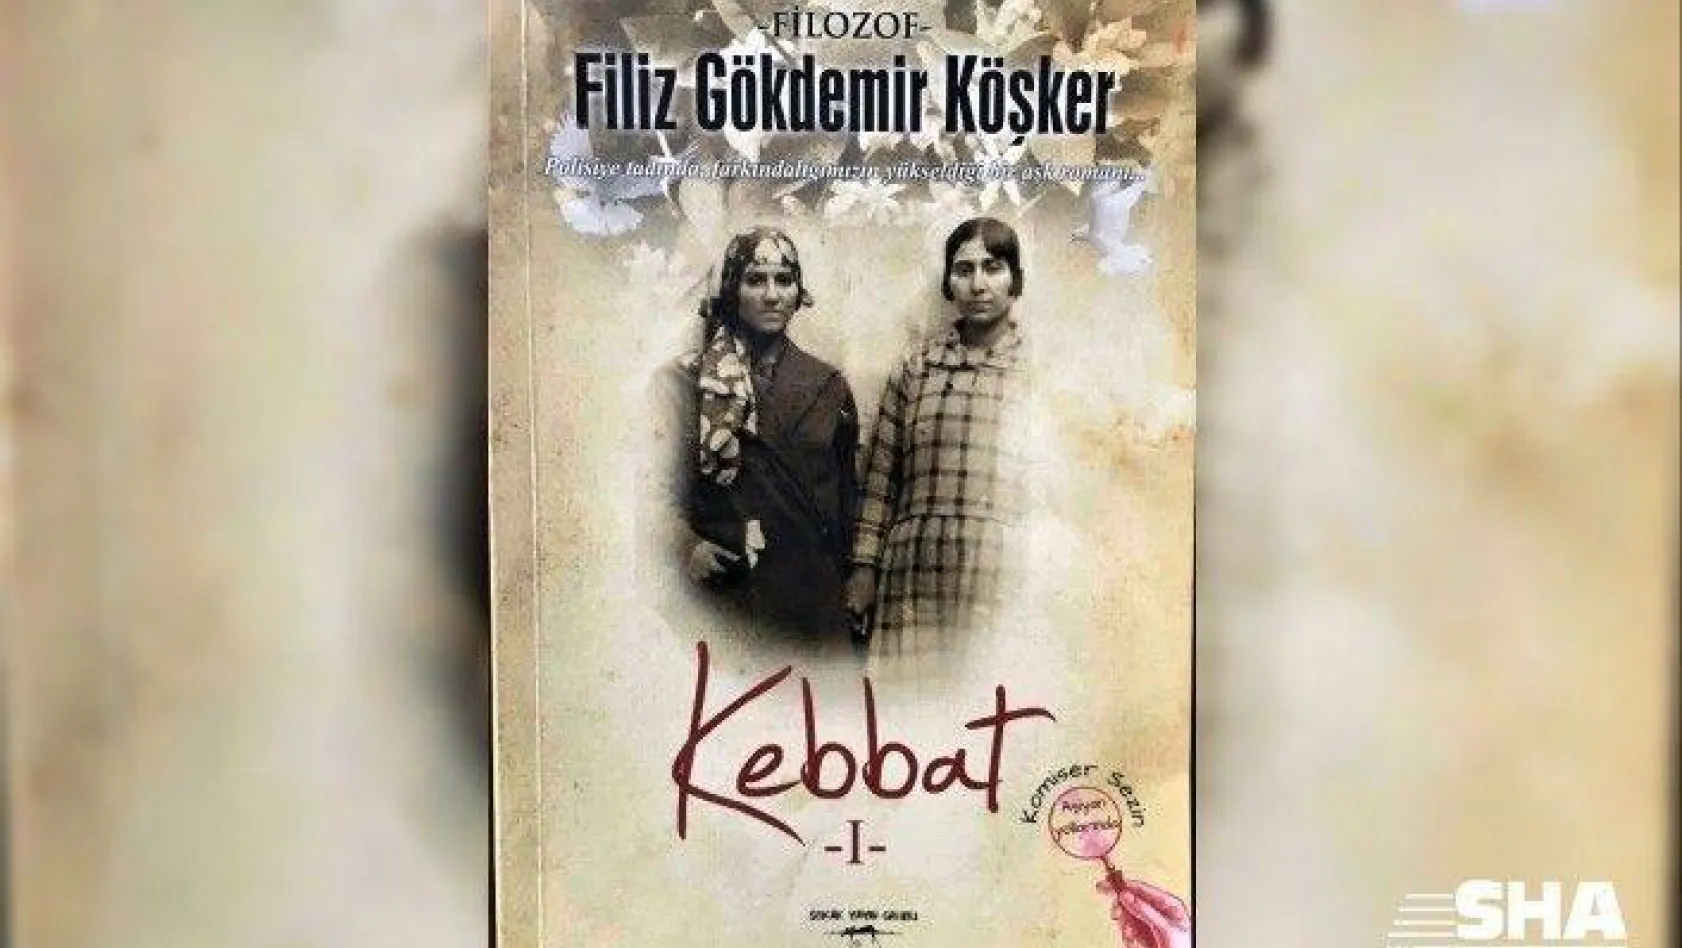 Filiz Gökdemir Köşker'in polisiye romanı 'Kebbat' çıktı